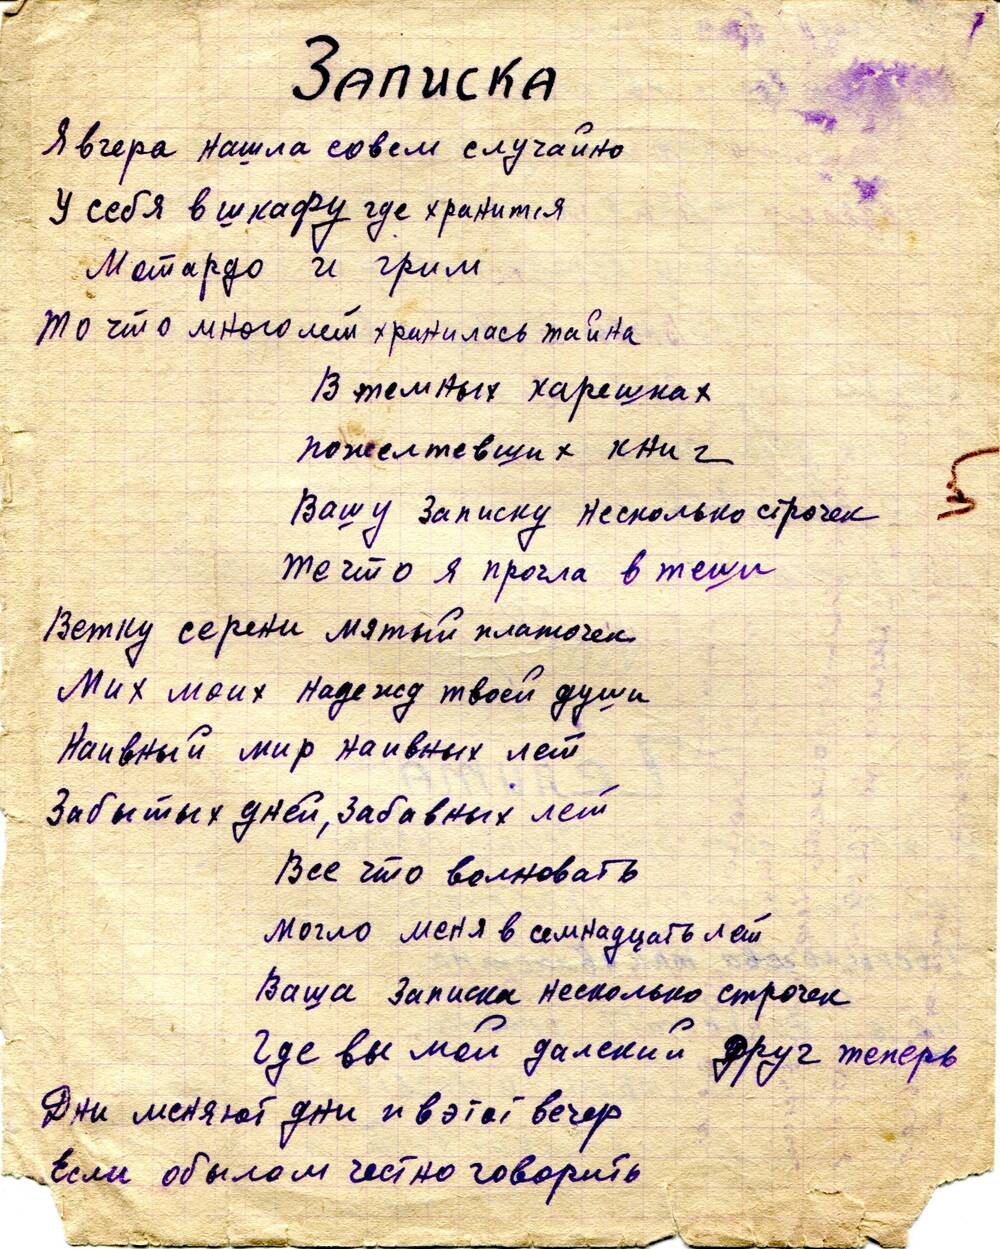 Рукопись. Песня «Записка», и первый куплет песни «Челита».